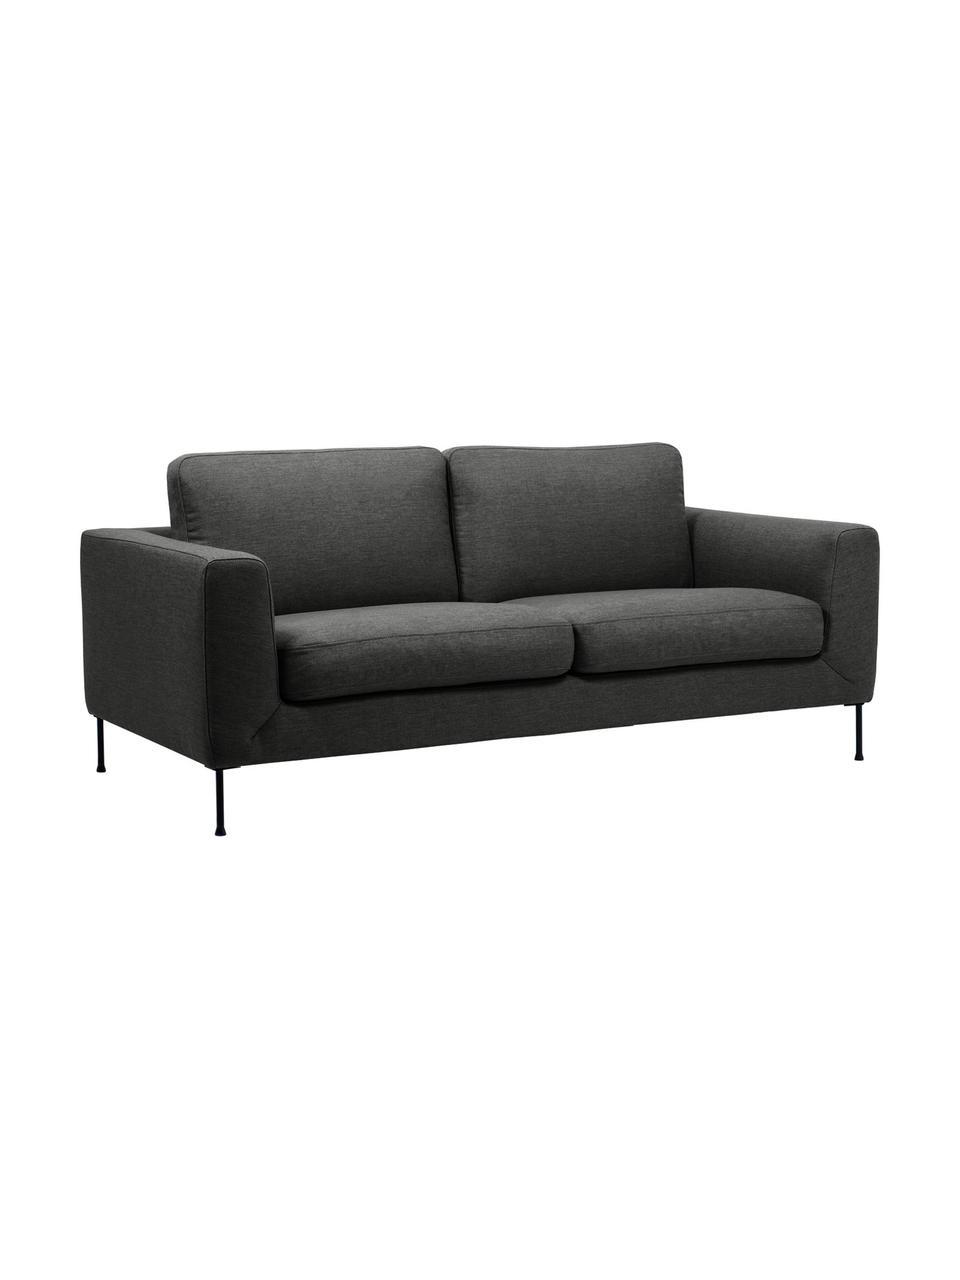 Sofa Cucita (2-Sitzer) in Anthrazit mit Metall-Füssen, Bezug: Webstoff (100% Polyester), Gestell: Massives Kiefernholz, FSC, Webstoff Anthrazit, B 187 x T 94 cm